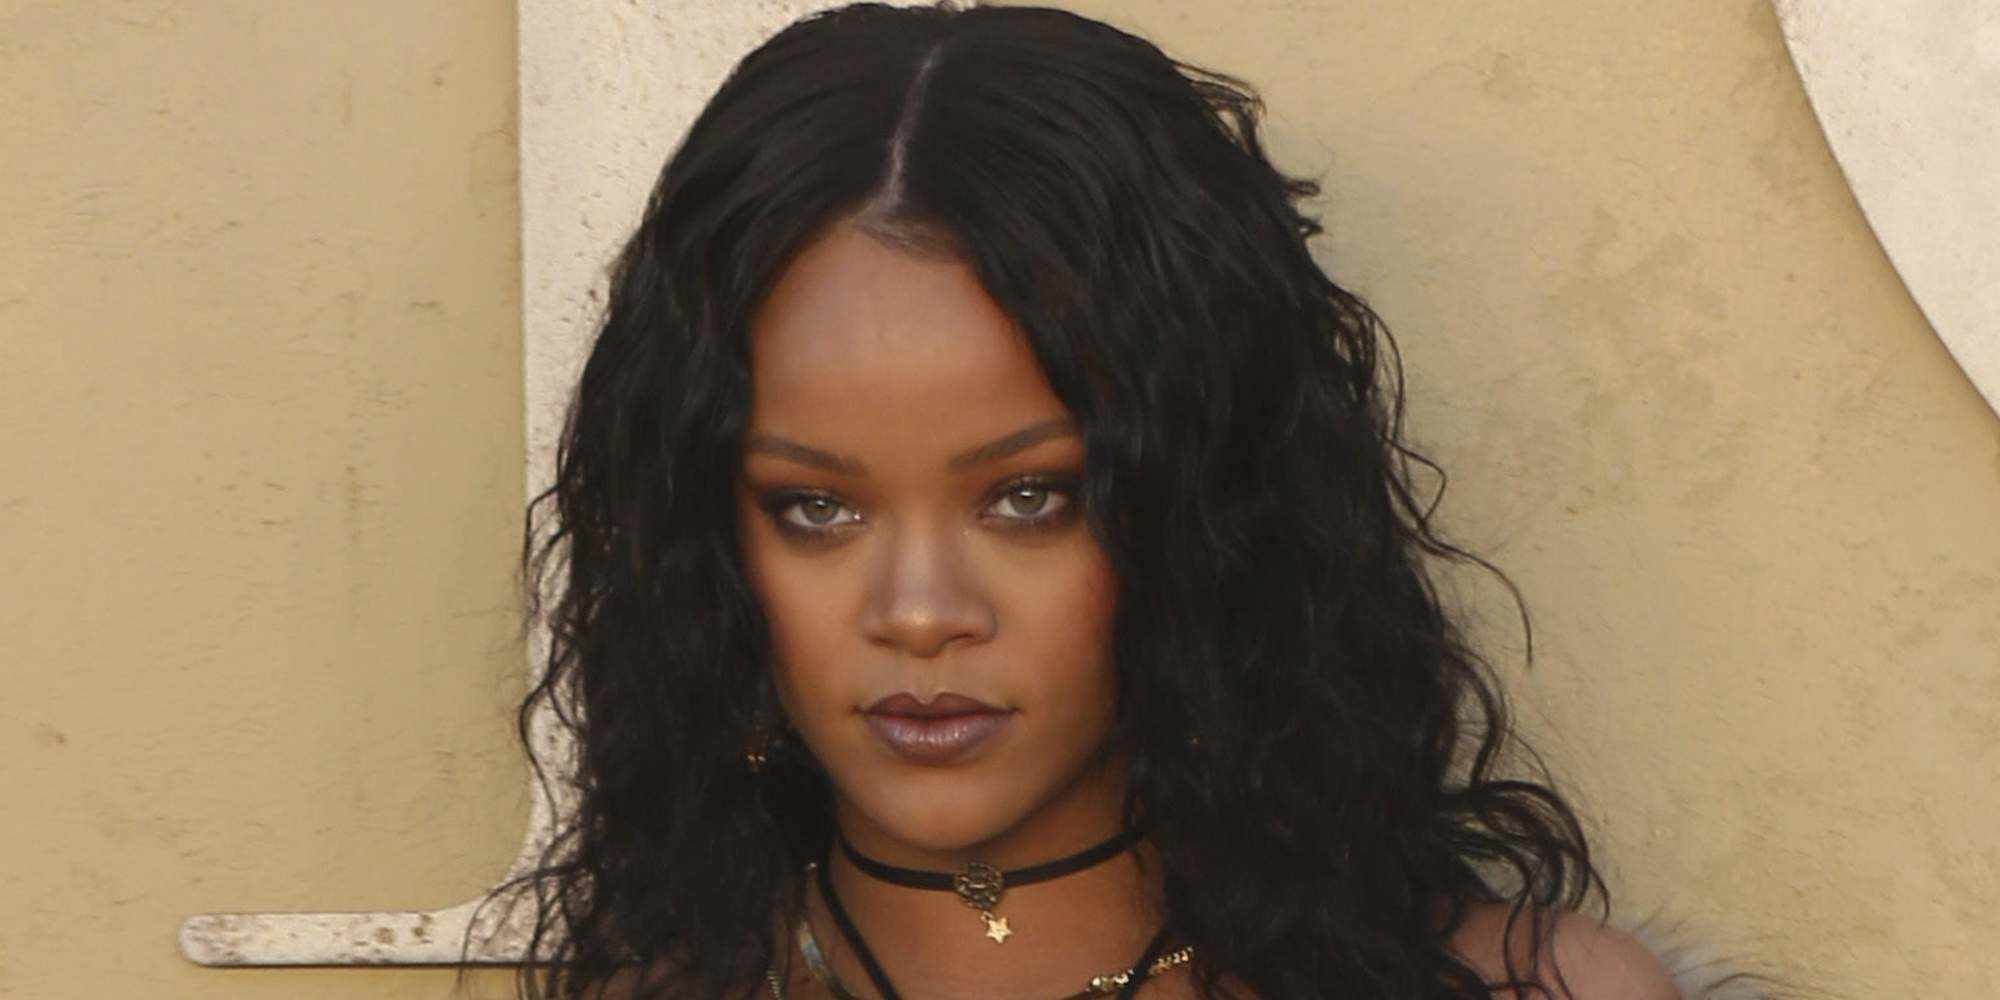 Rihanna regresa a la música 3 años después